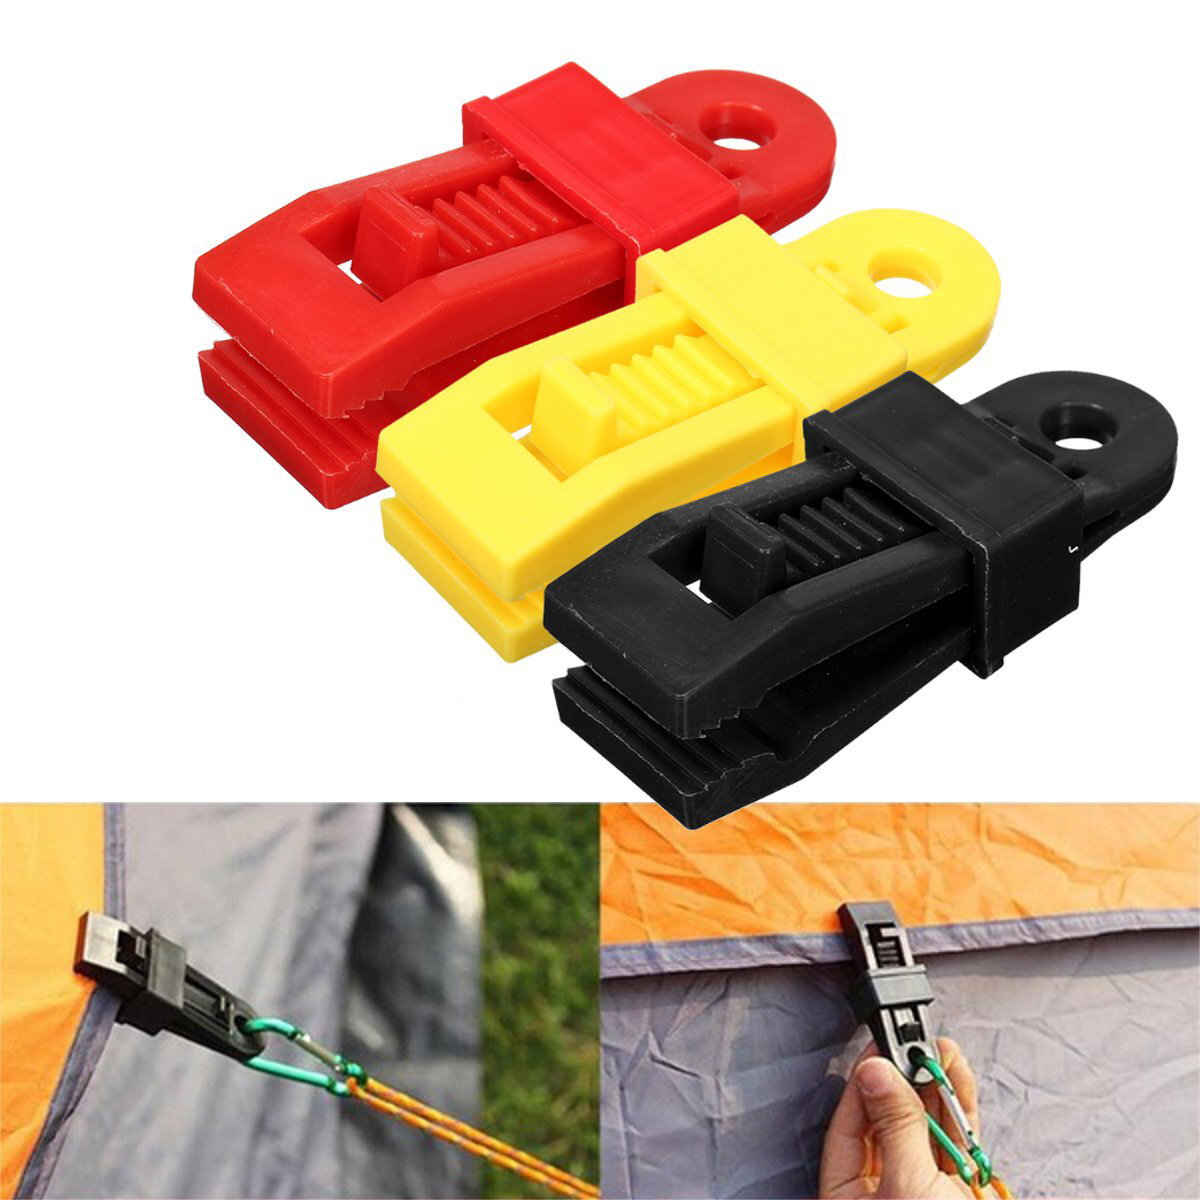 24 Herbruikbare plastic tentclips Tentgesp Outdoor Camping Tent Tool - Geel / Rood / Zwart